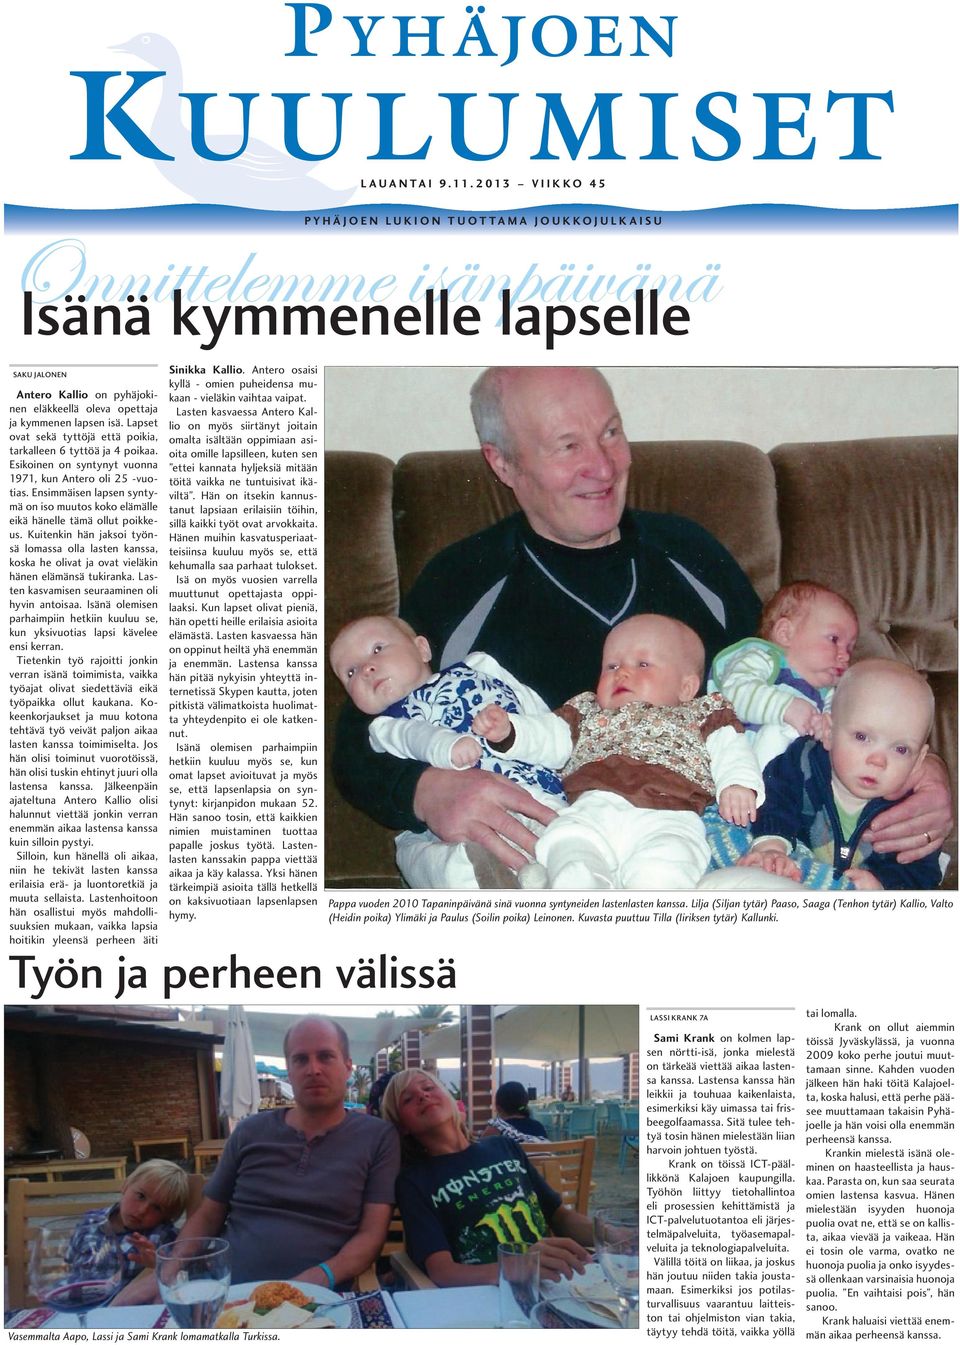 Antero Kallio on pyhäjokinen eläkkeellä oleva opettaja Lasten kasvaessa Antero Kallio on myös siirtänyt joitain ja kymmenen lapsen isä.